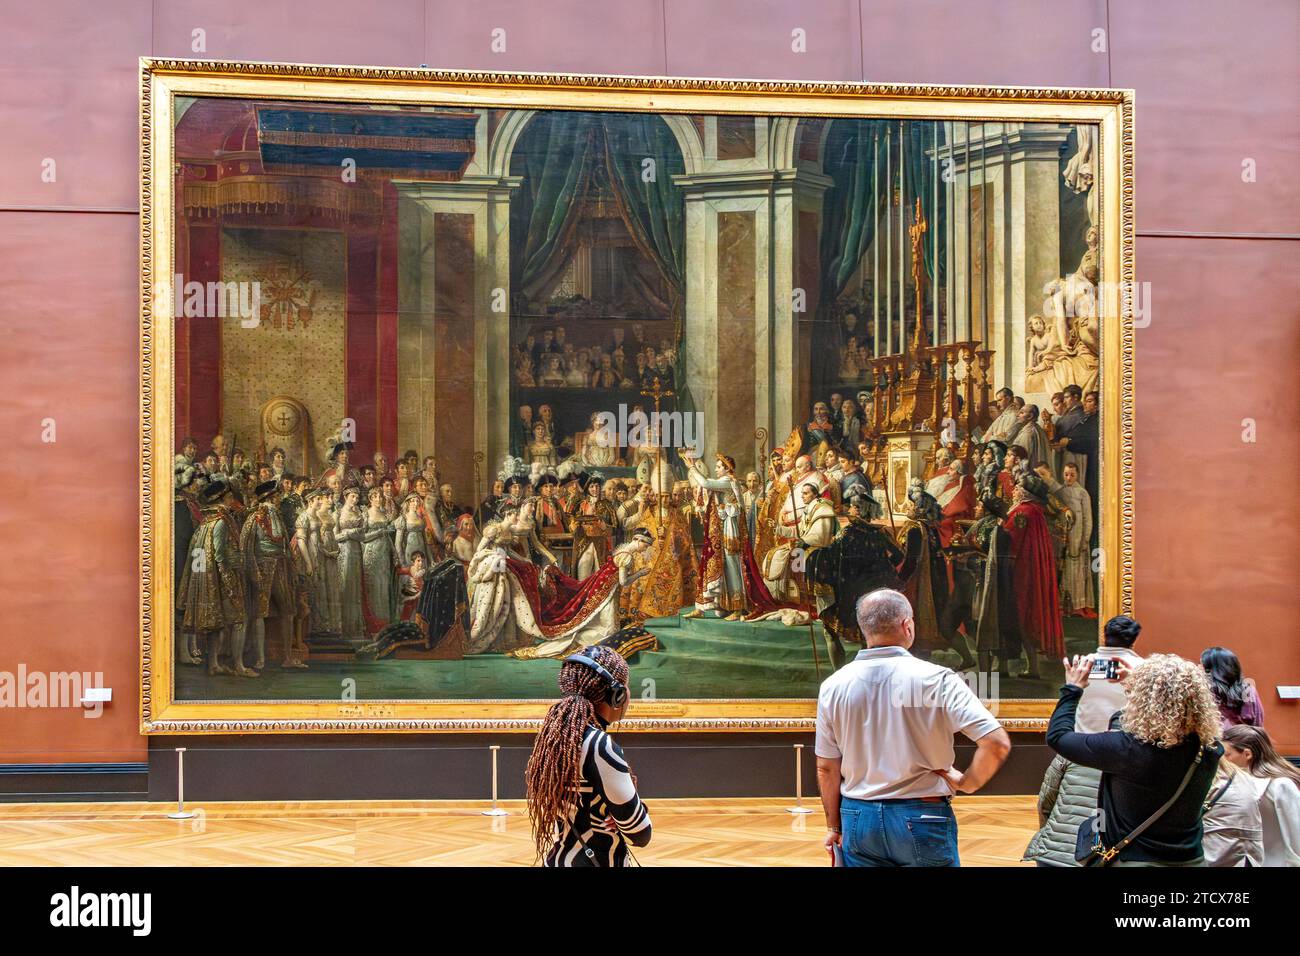 Personnes admirant le chef-d'œuvre, le couronnement de Napoléon , de Jacques-Louis David dans l'aile Denon du Musée du Louvre , Paris, France Banque D'Images